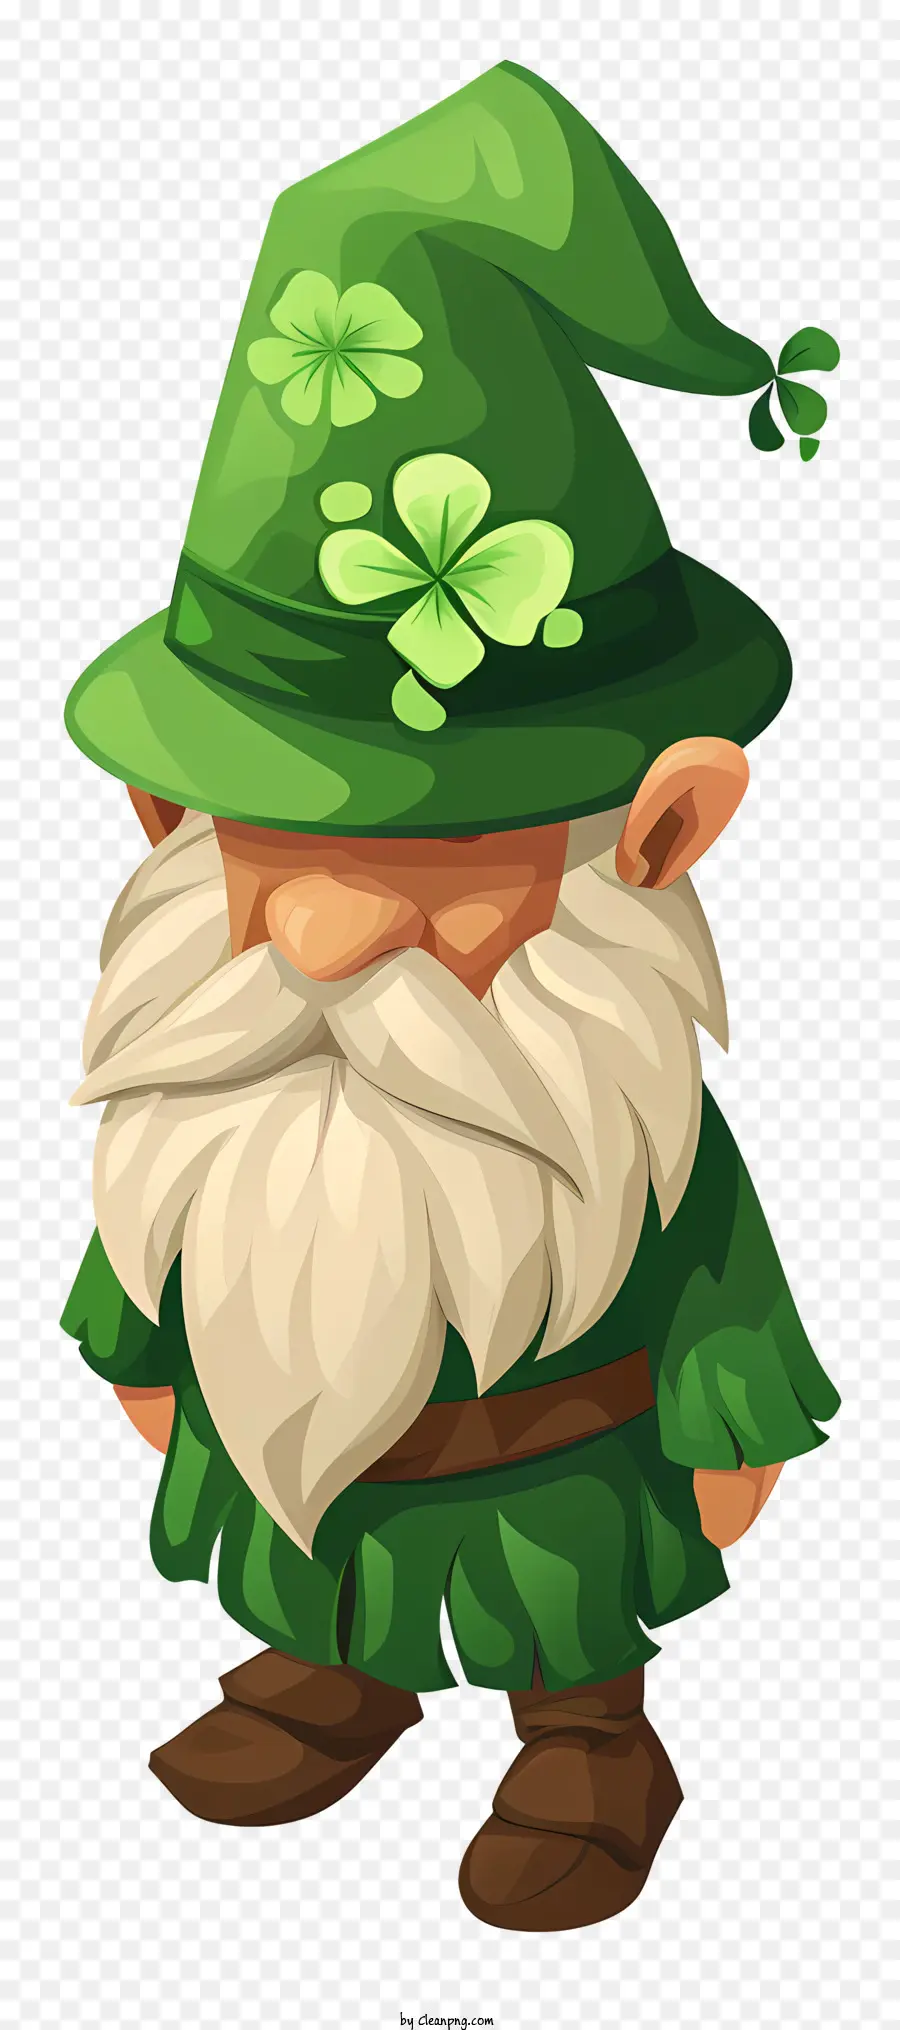 St Patrick's Day Gnome hoạt hình gnome trang phục màu xanh lá cây Cỏ ba lá - Phim hoạt hình gnome trong trang phục màu xanh lá cây cầm cỏ ba lá